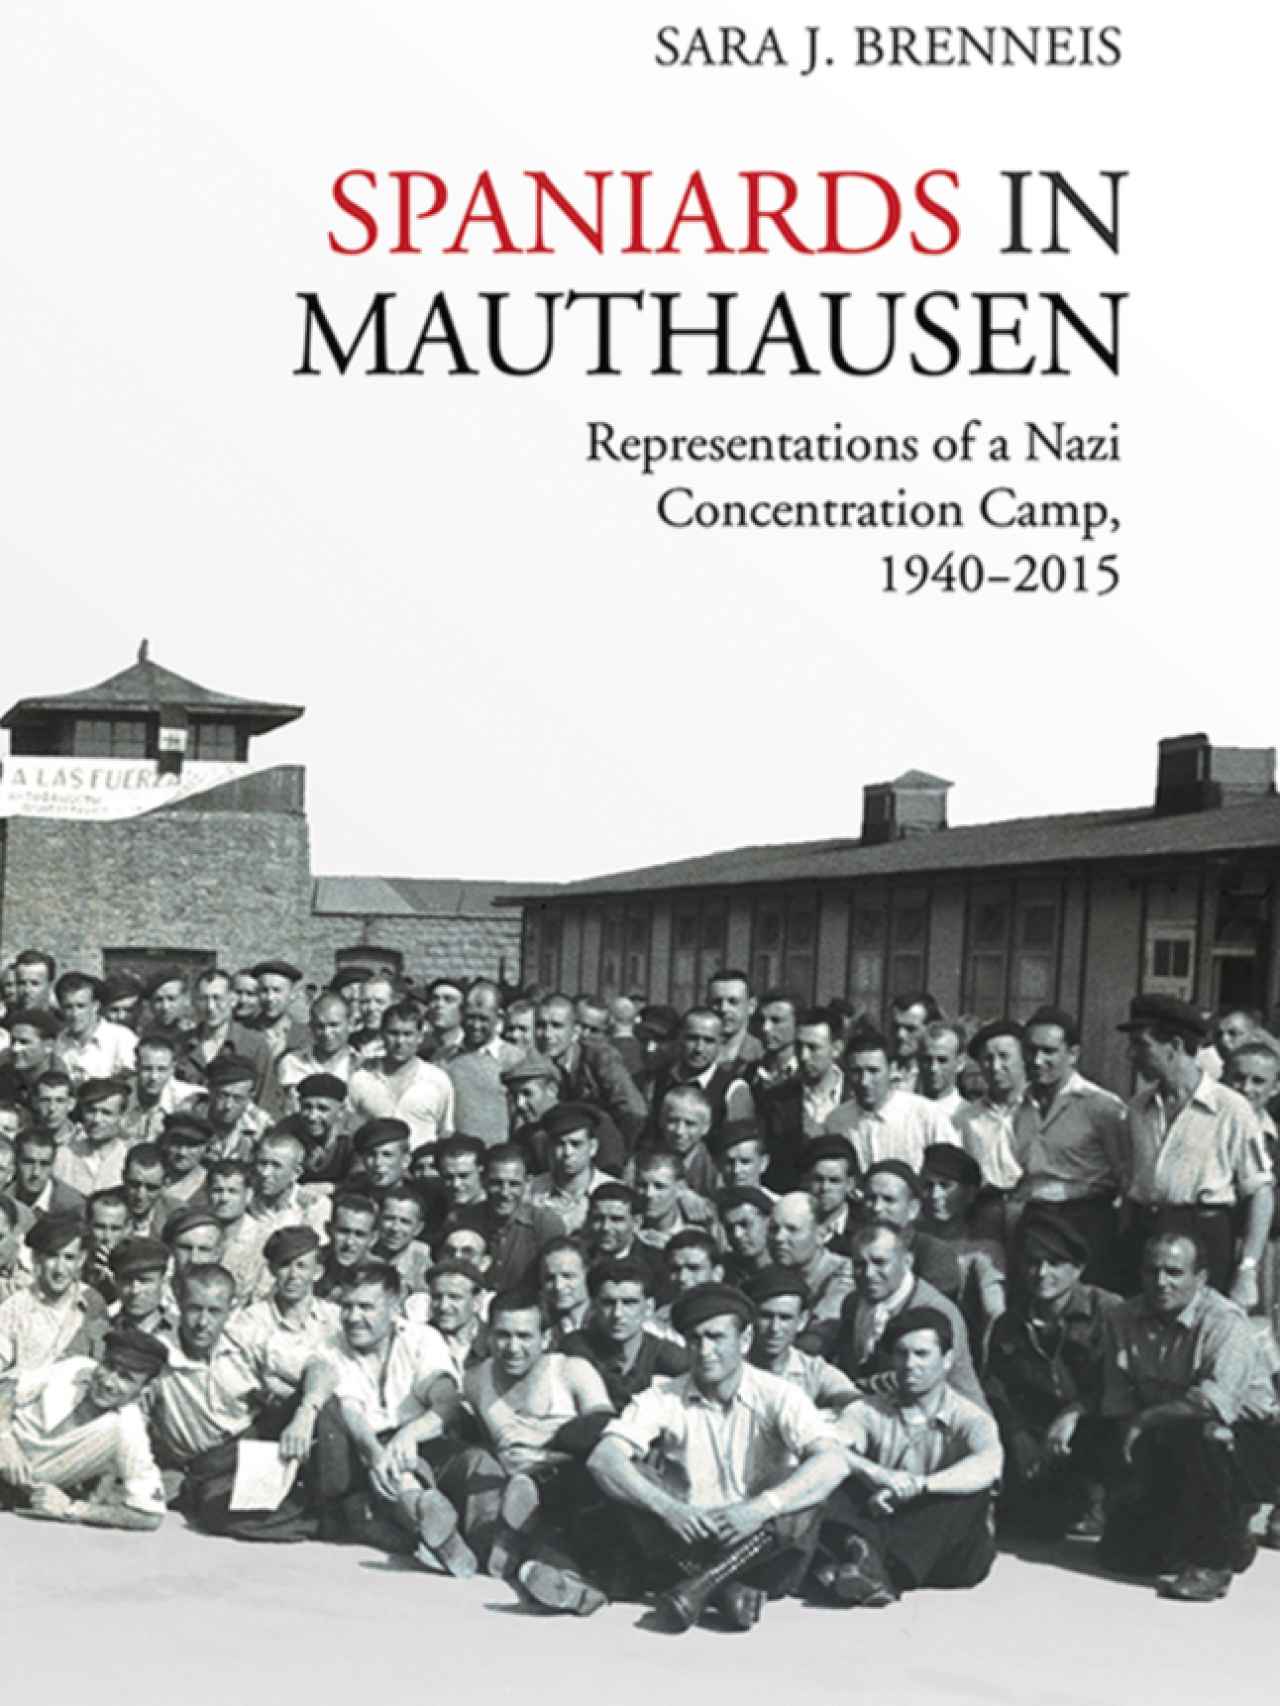 Los españoles muertos en Mauthausen de los que se olvida la memoria histórica